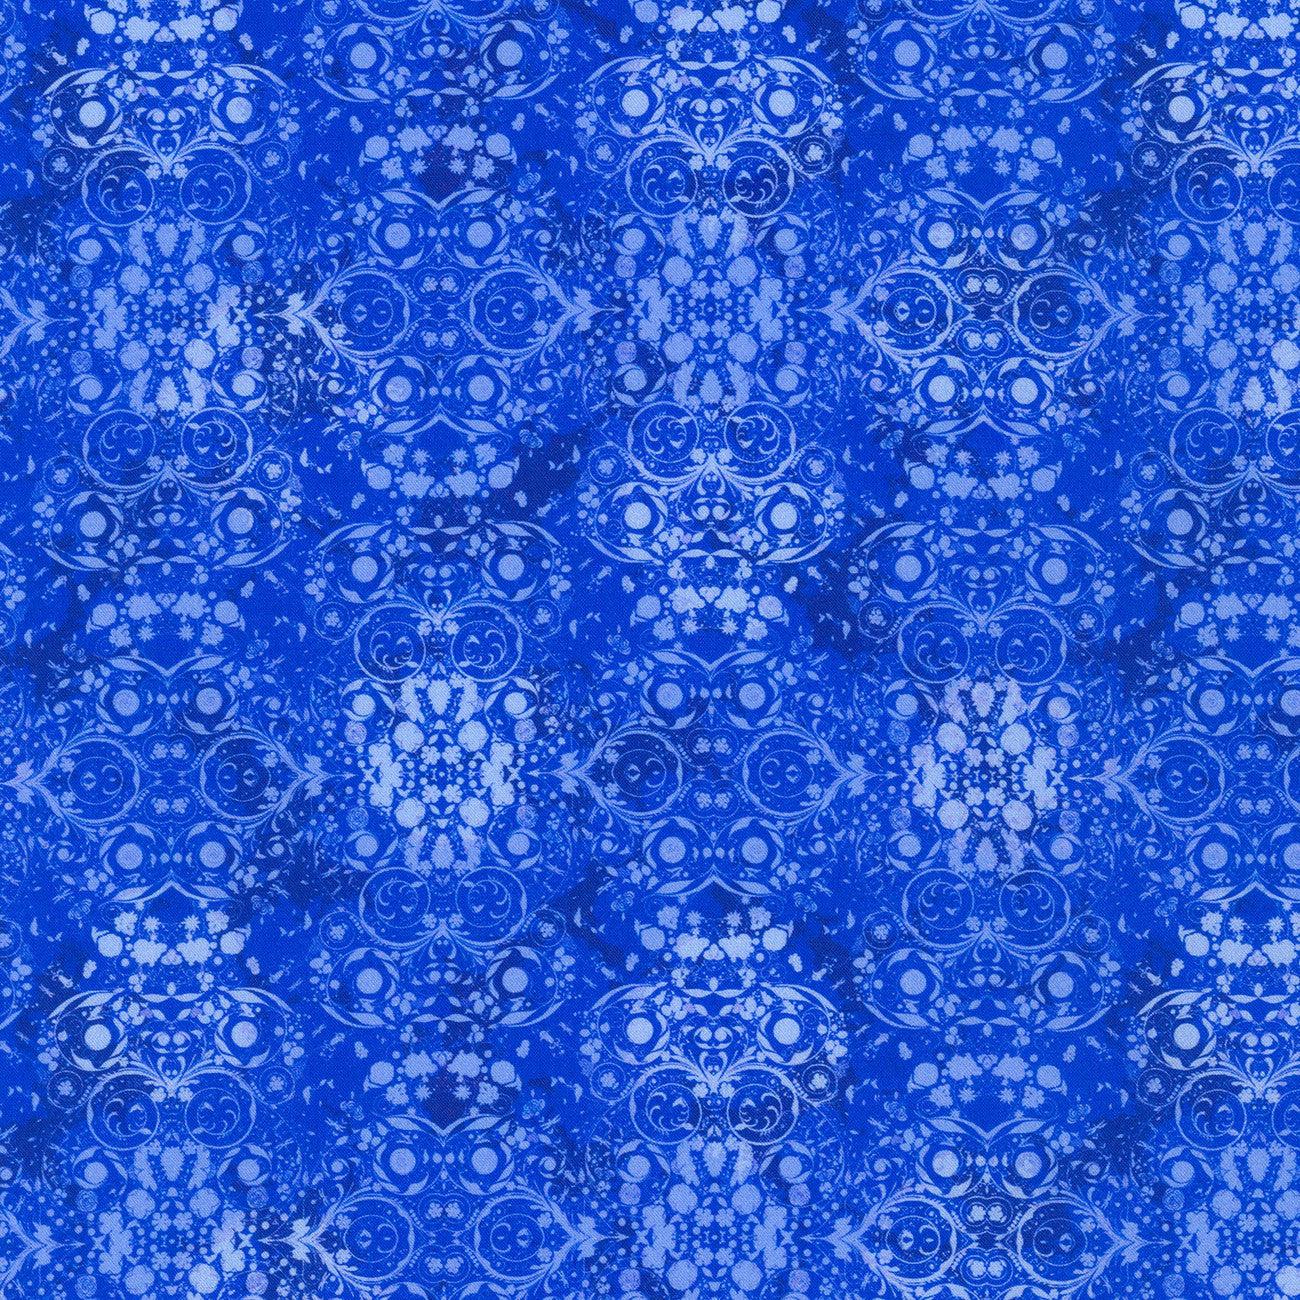 Secret Garden Sapphire Geometric Tonal Fabric-Robert Kaufman-My Favorite Quilt Store